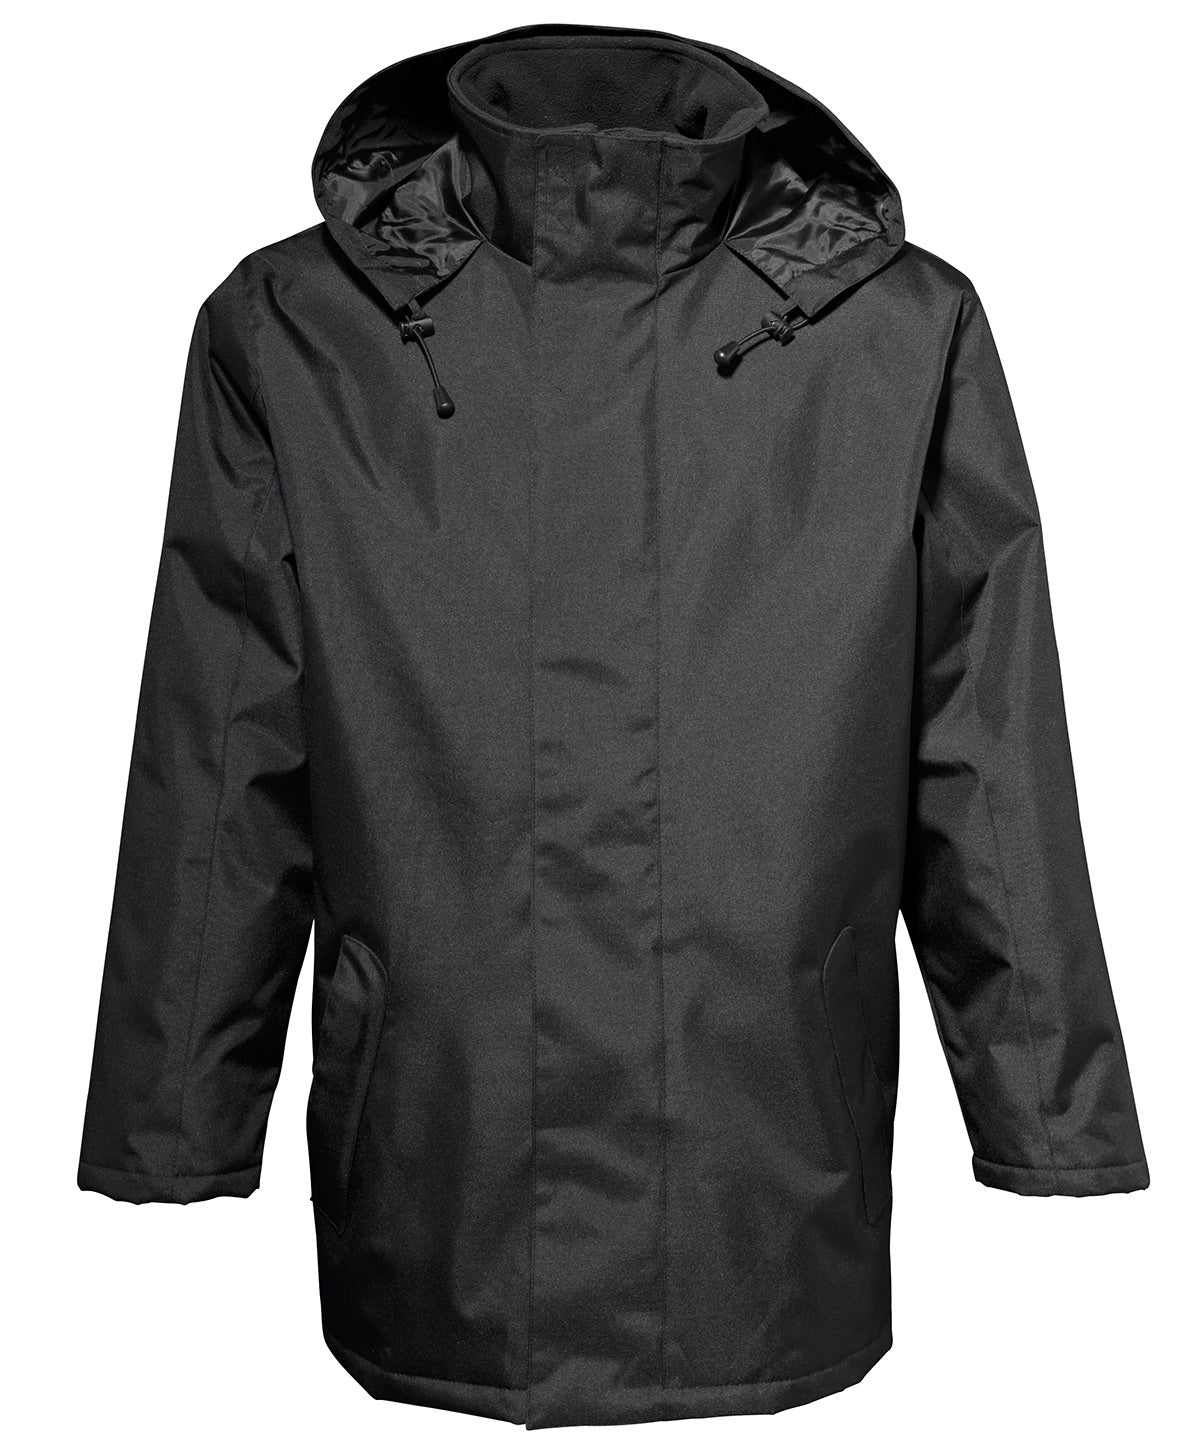 Personalised Jackets - Black 2786 Parka jacket